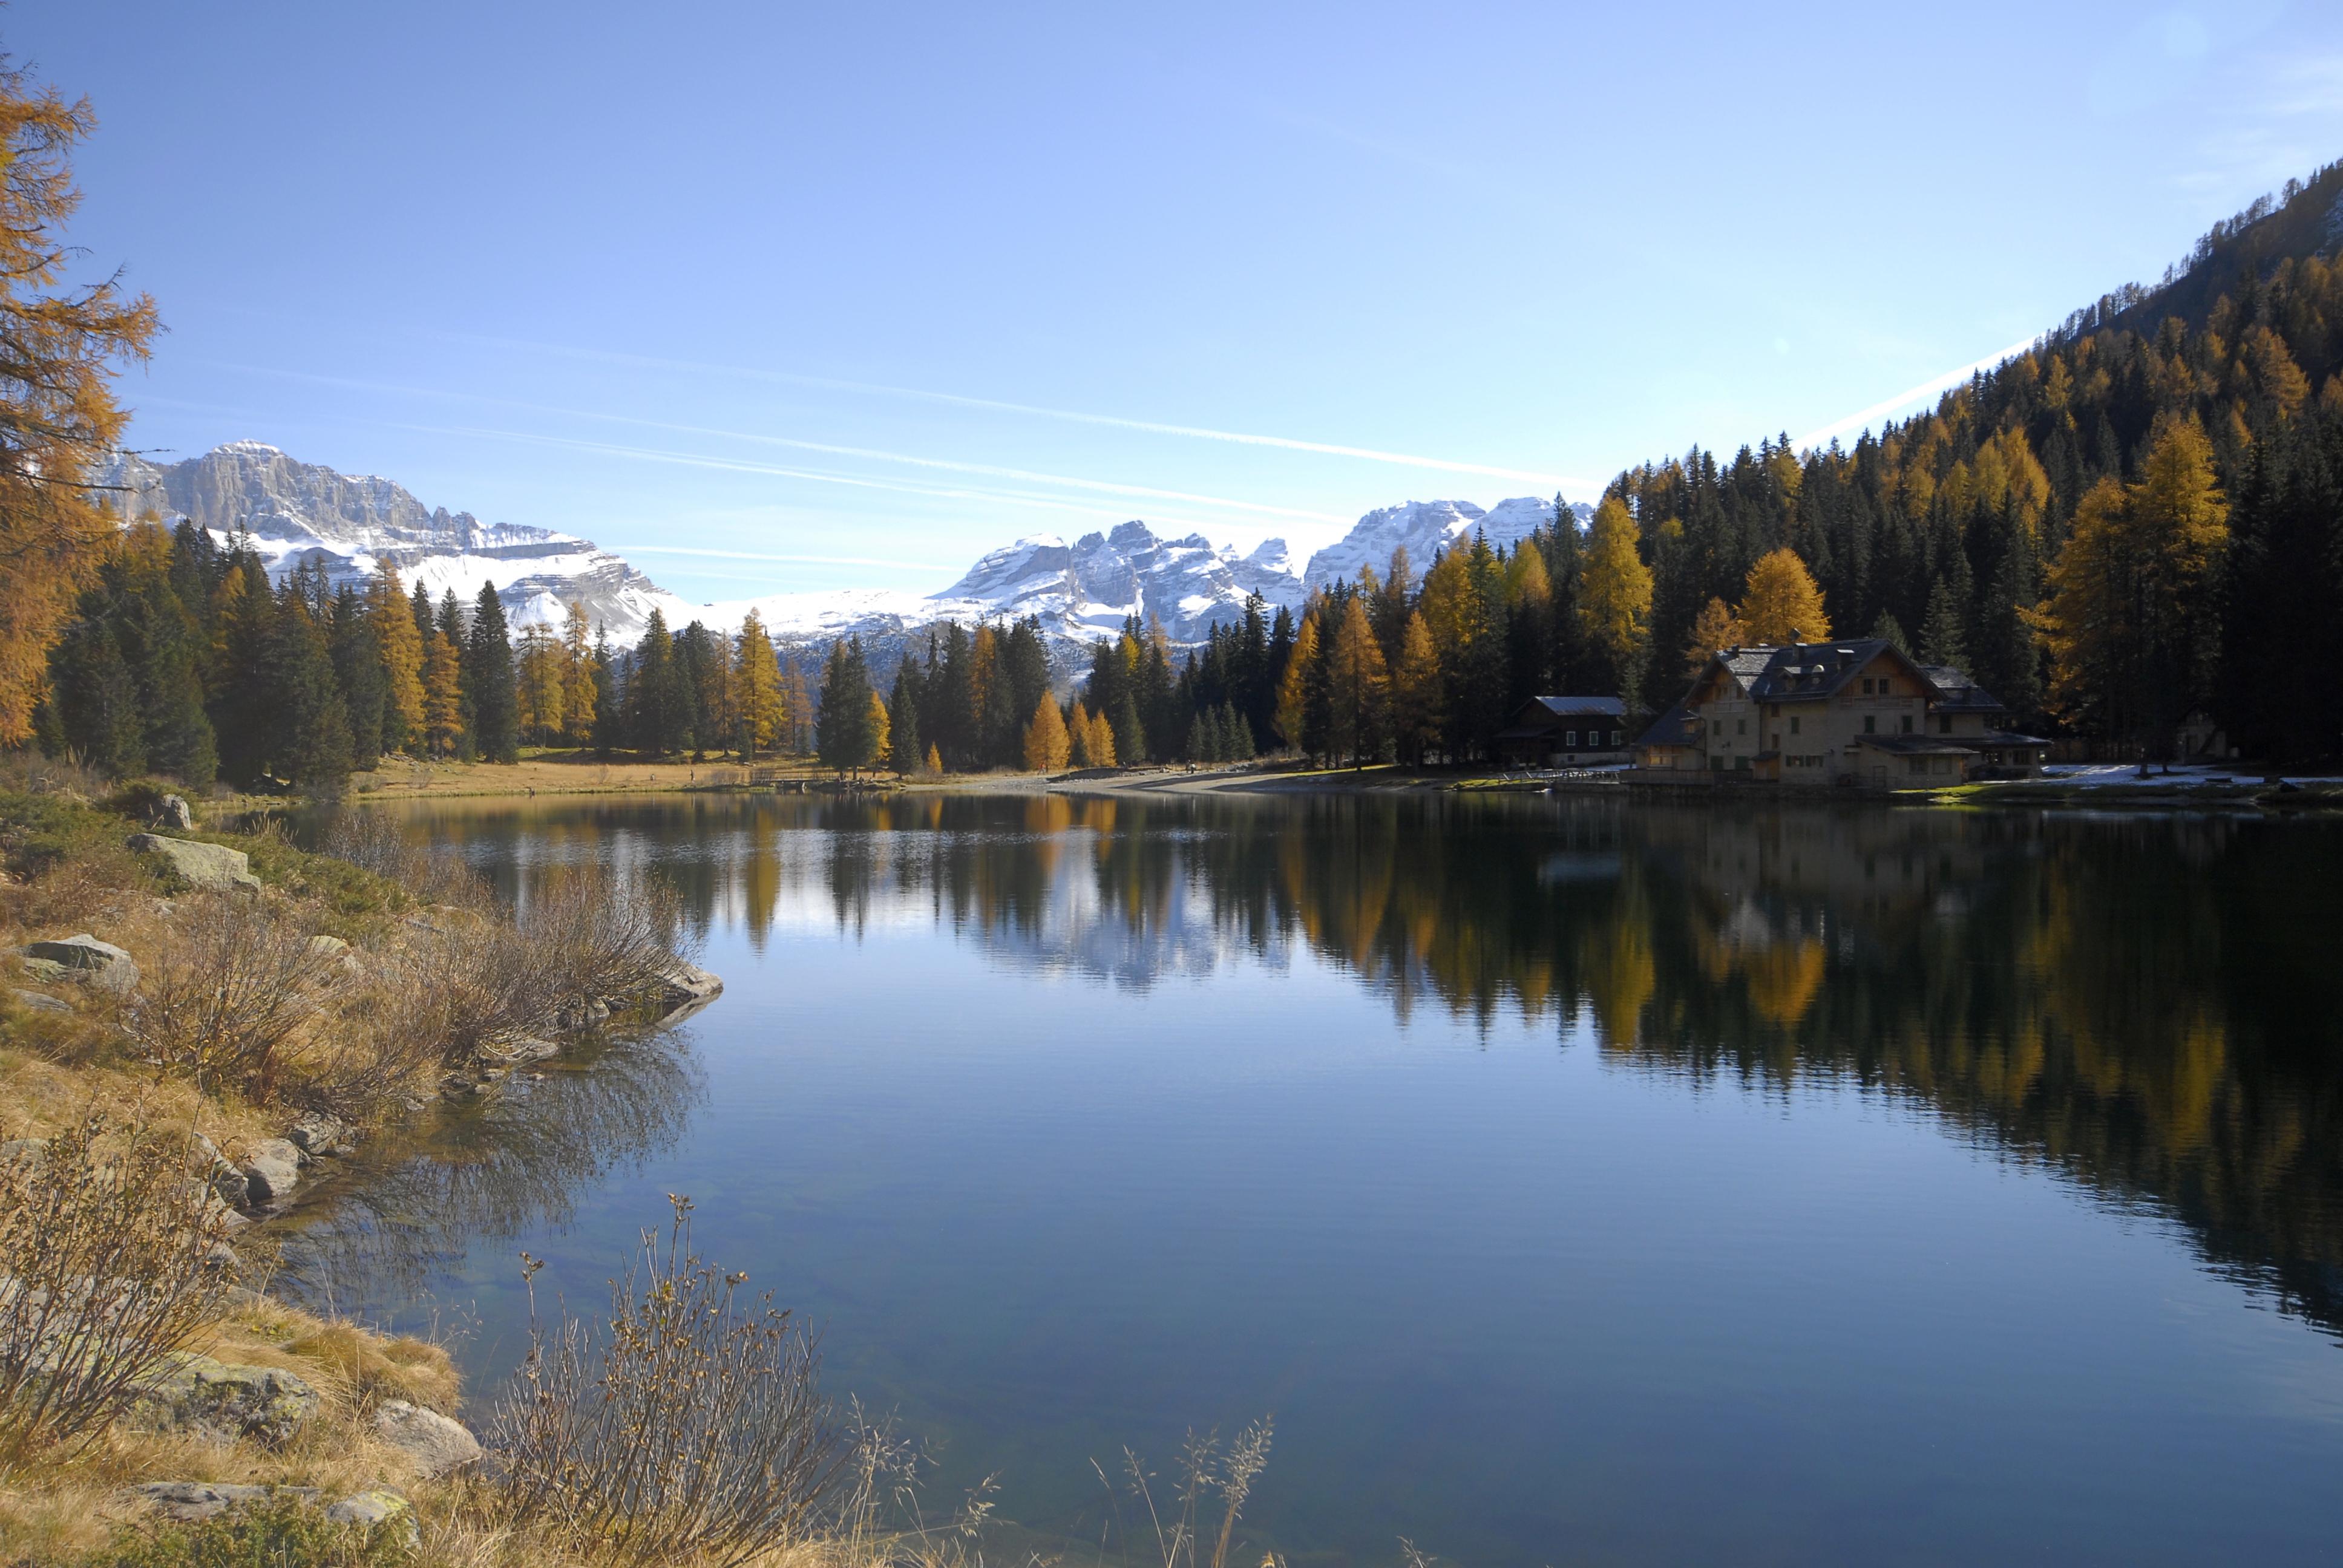 Lago Nambino in autunno, prima tappa del Giro dei 5 laghi, di Elisa, via Flickr